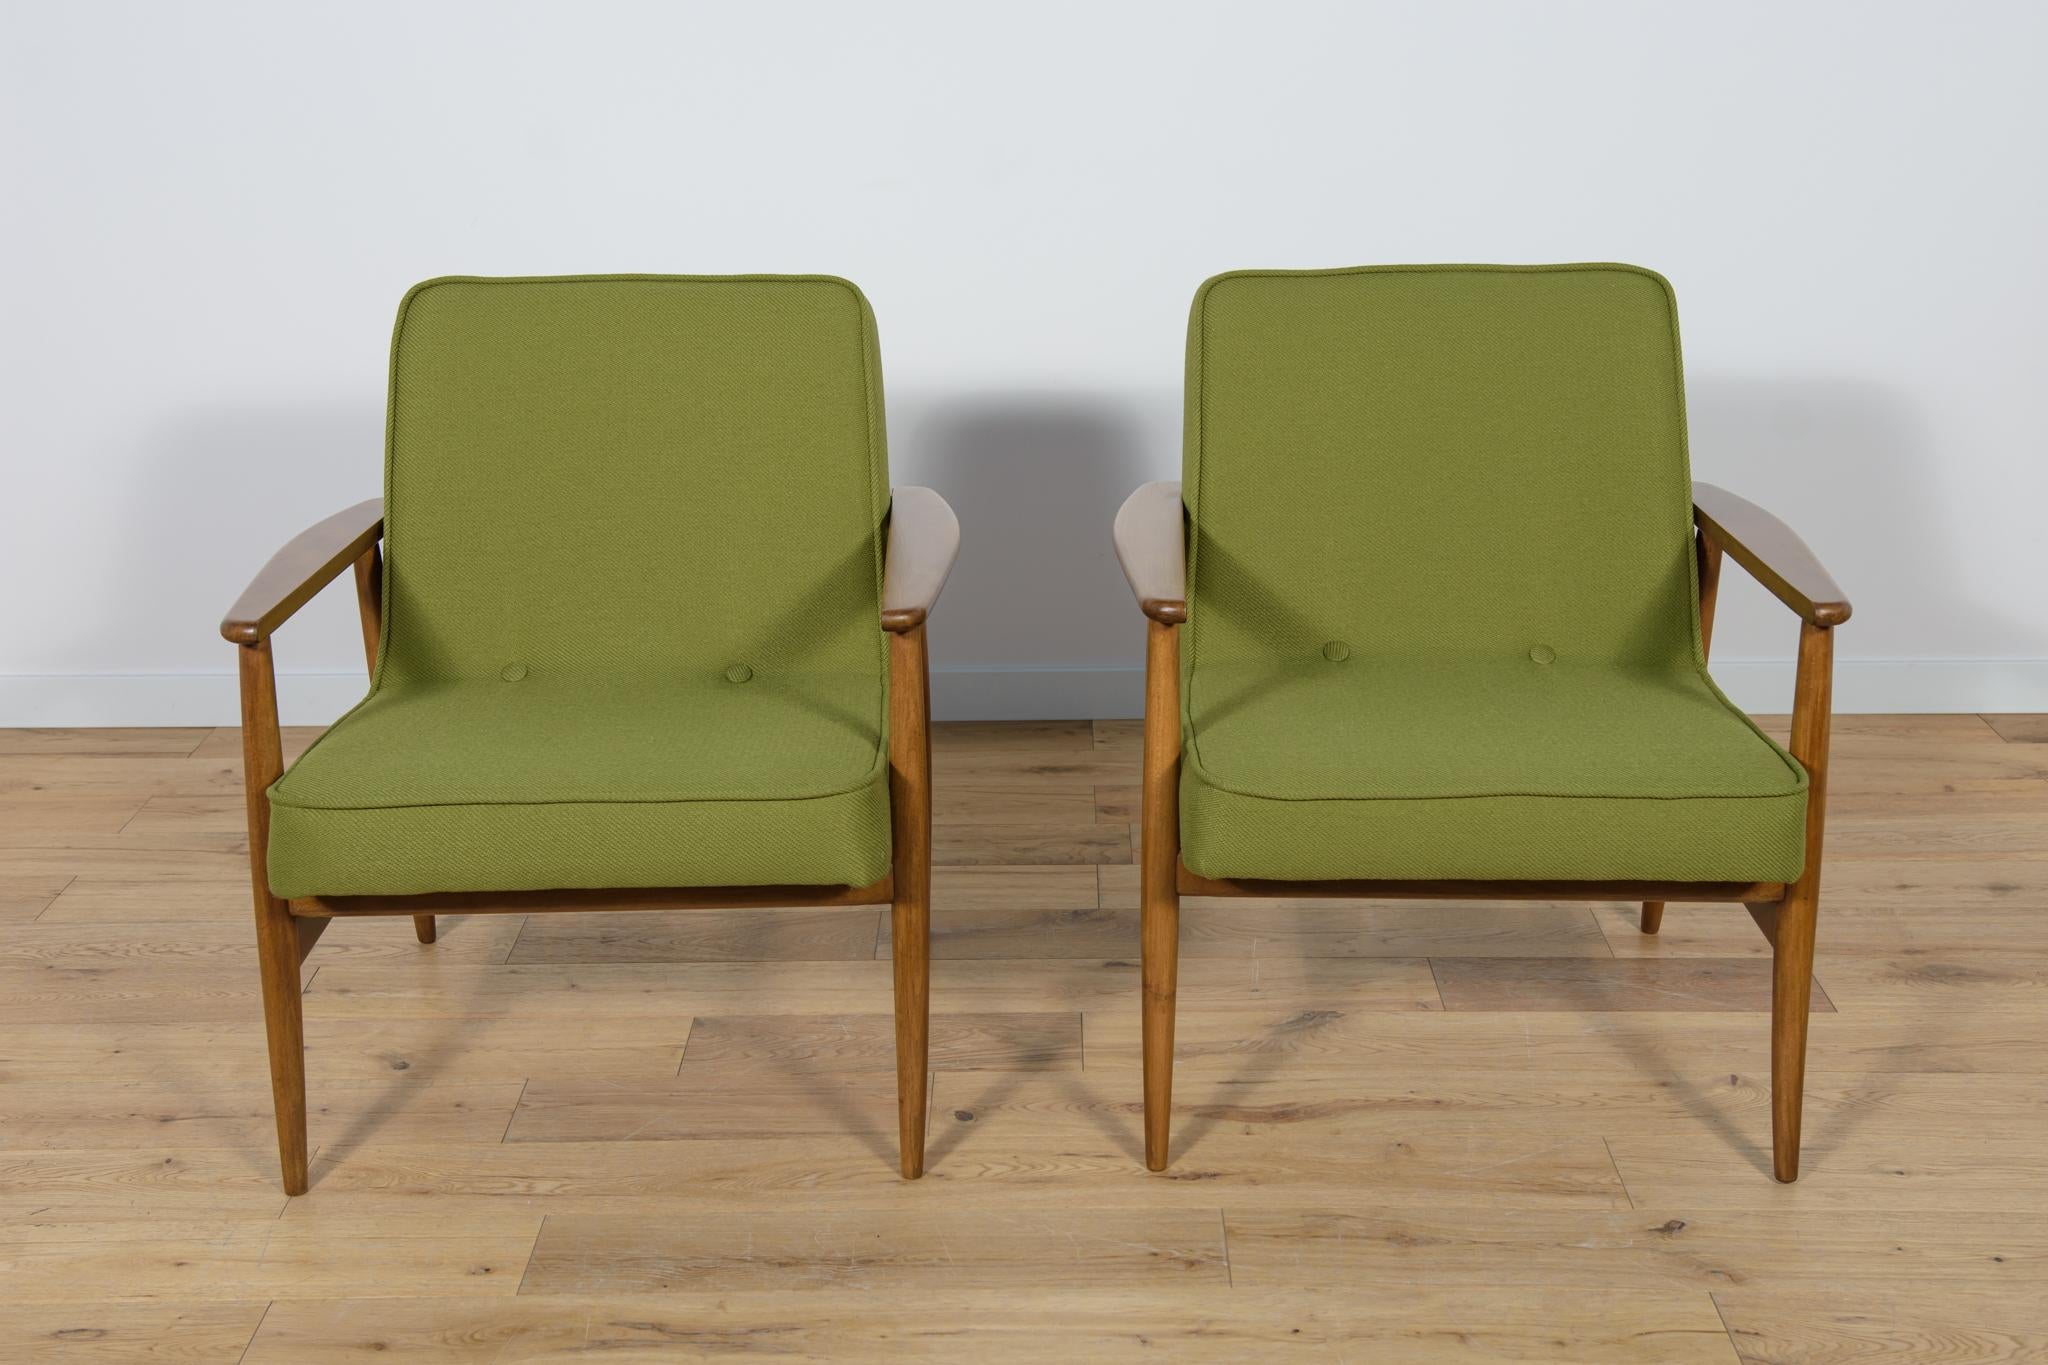 Ein Paar polnische Sessel Typ 300-192, entworfen von Juliusz Kędziorek für Gościcińska Fabryka Mebli in den frühen 1970er Jahren.
Die Sessel wurden professionell geschreinert und gepolstert. Das Buchenholz wurde von der alten Oberfläche gereinigt,